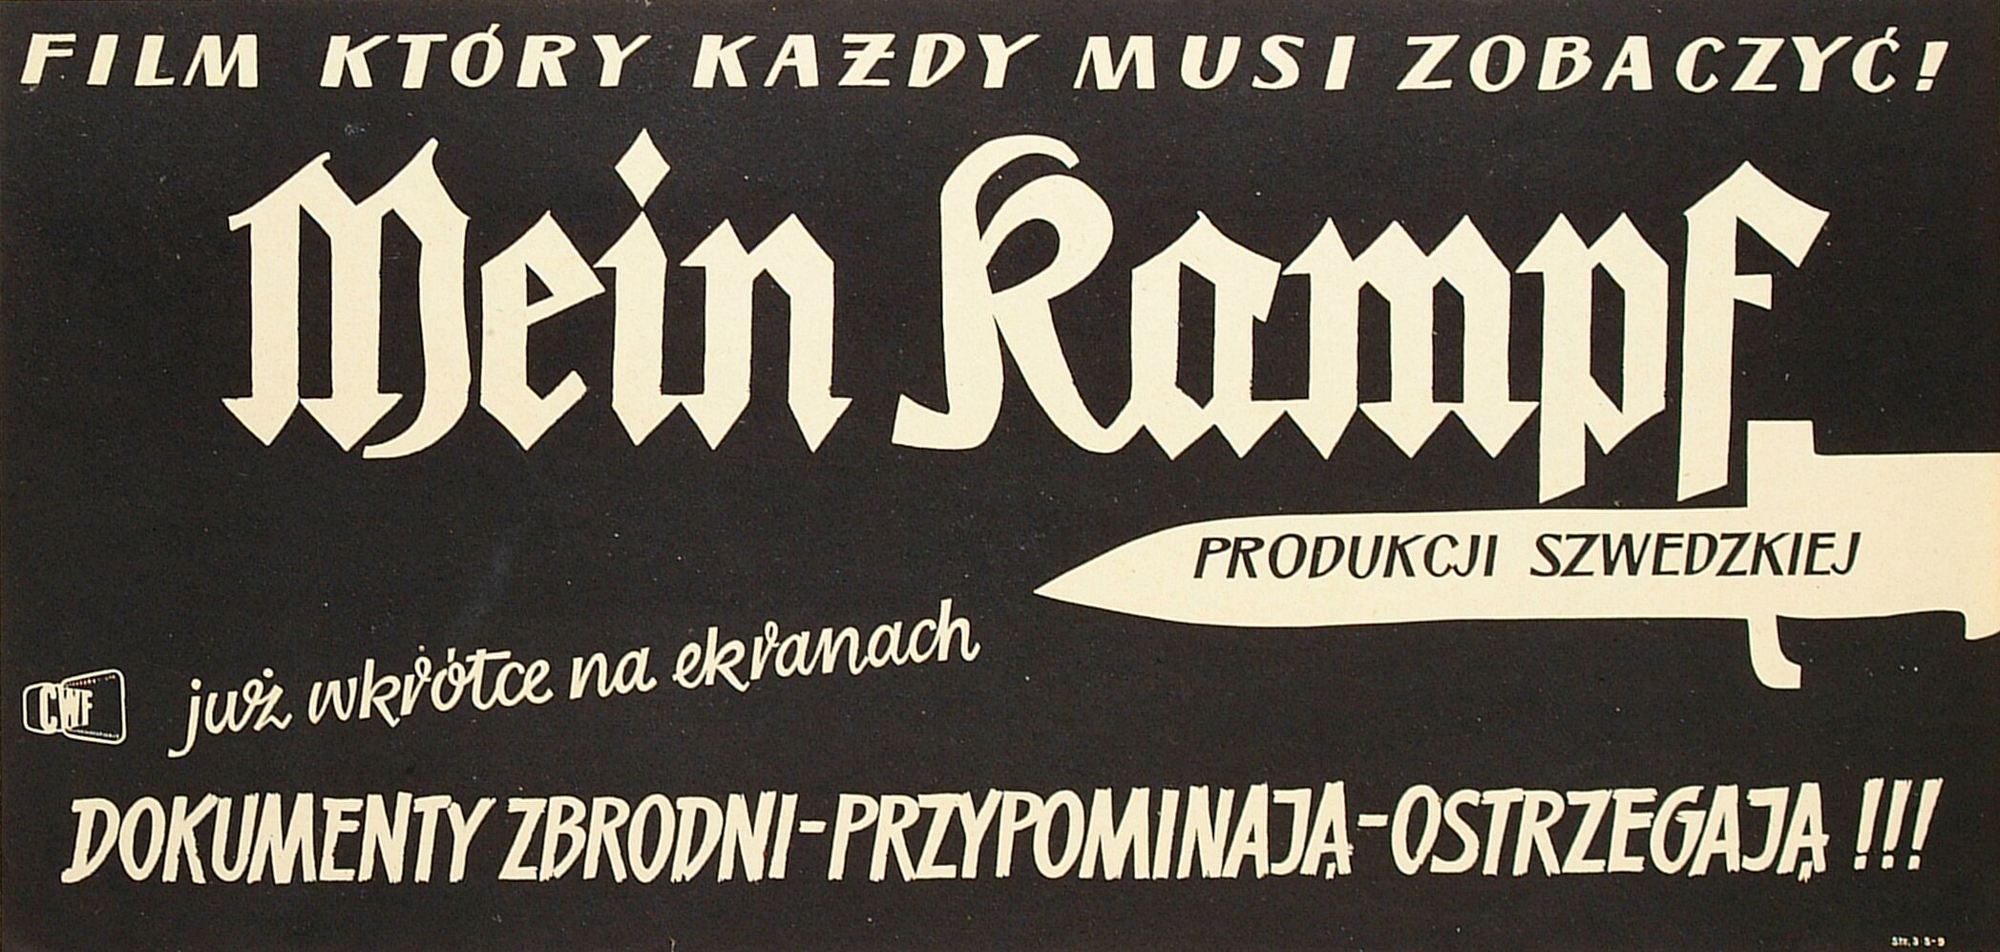 Wojciech Fangor: Mein Kampf, 1960